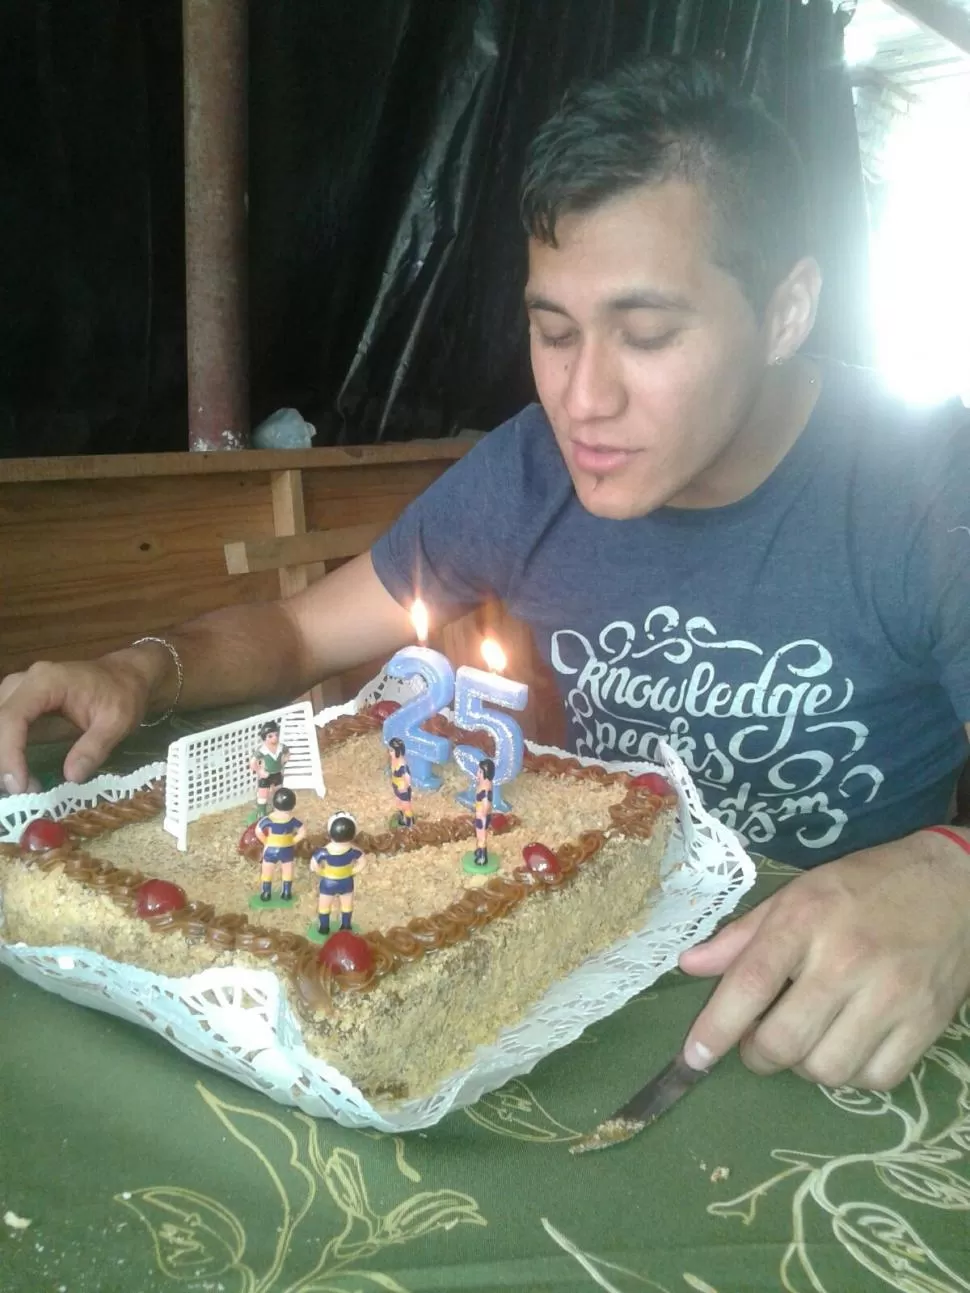 EN FAMILIA. Gonzalo Rodríguez luego de la práctica viajó a Aguilares para celebrar su cumpleaños con sus seres queridos. Allí lo esperaba una torta especial. foto de gonzalo rodriguez